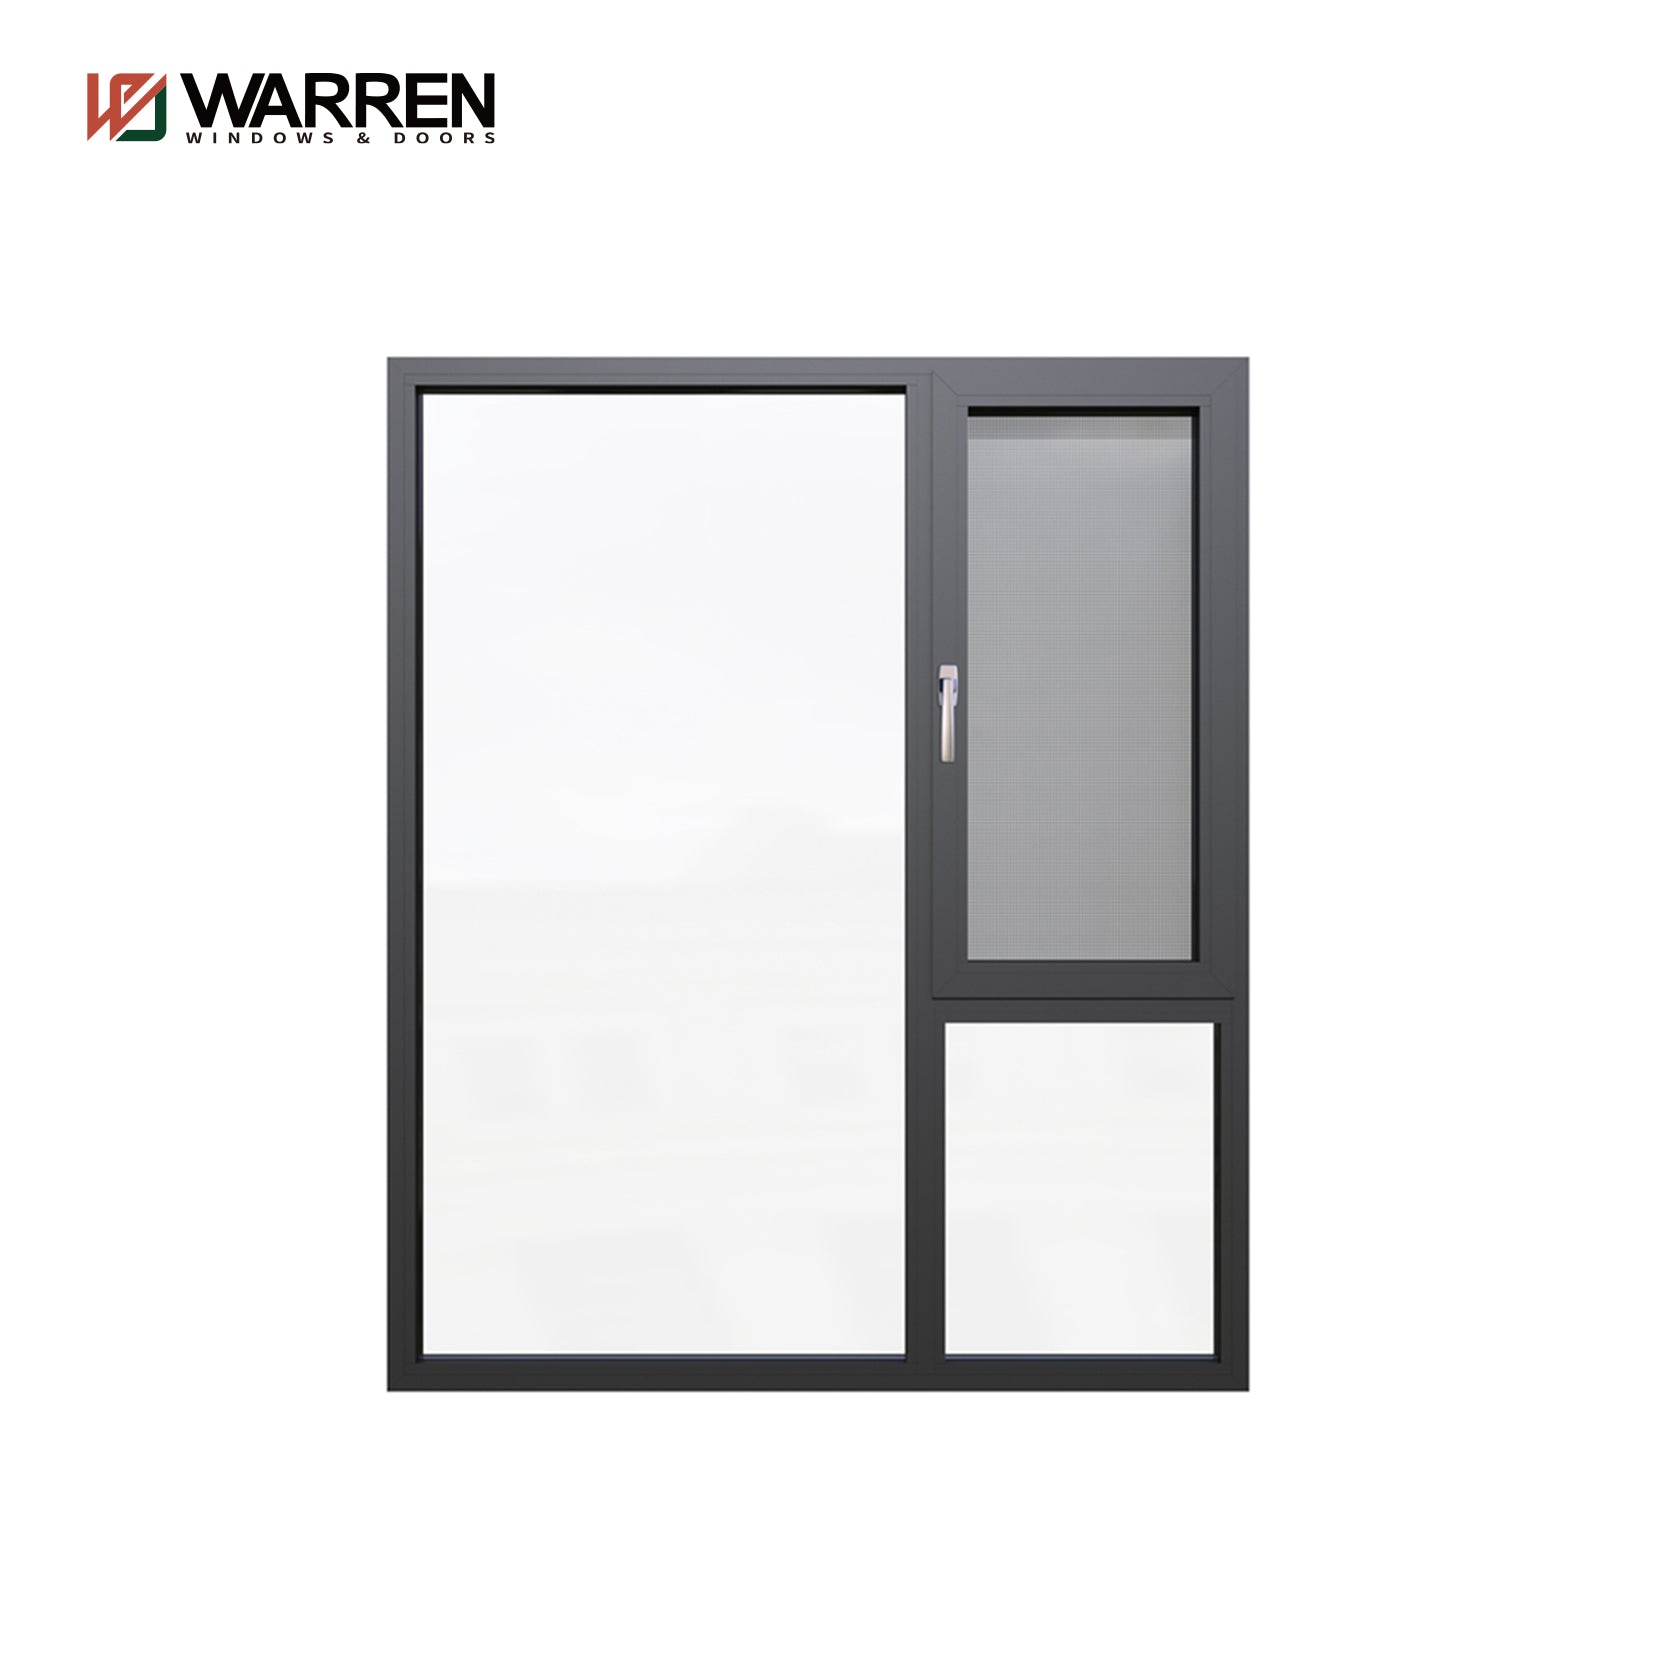 Warren New Model Customized Aluminum Sliding Window Casement Glass Aluminium Casement Window